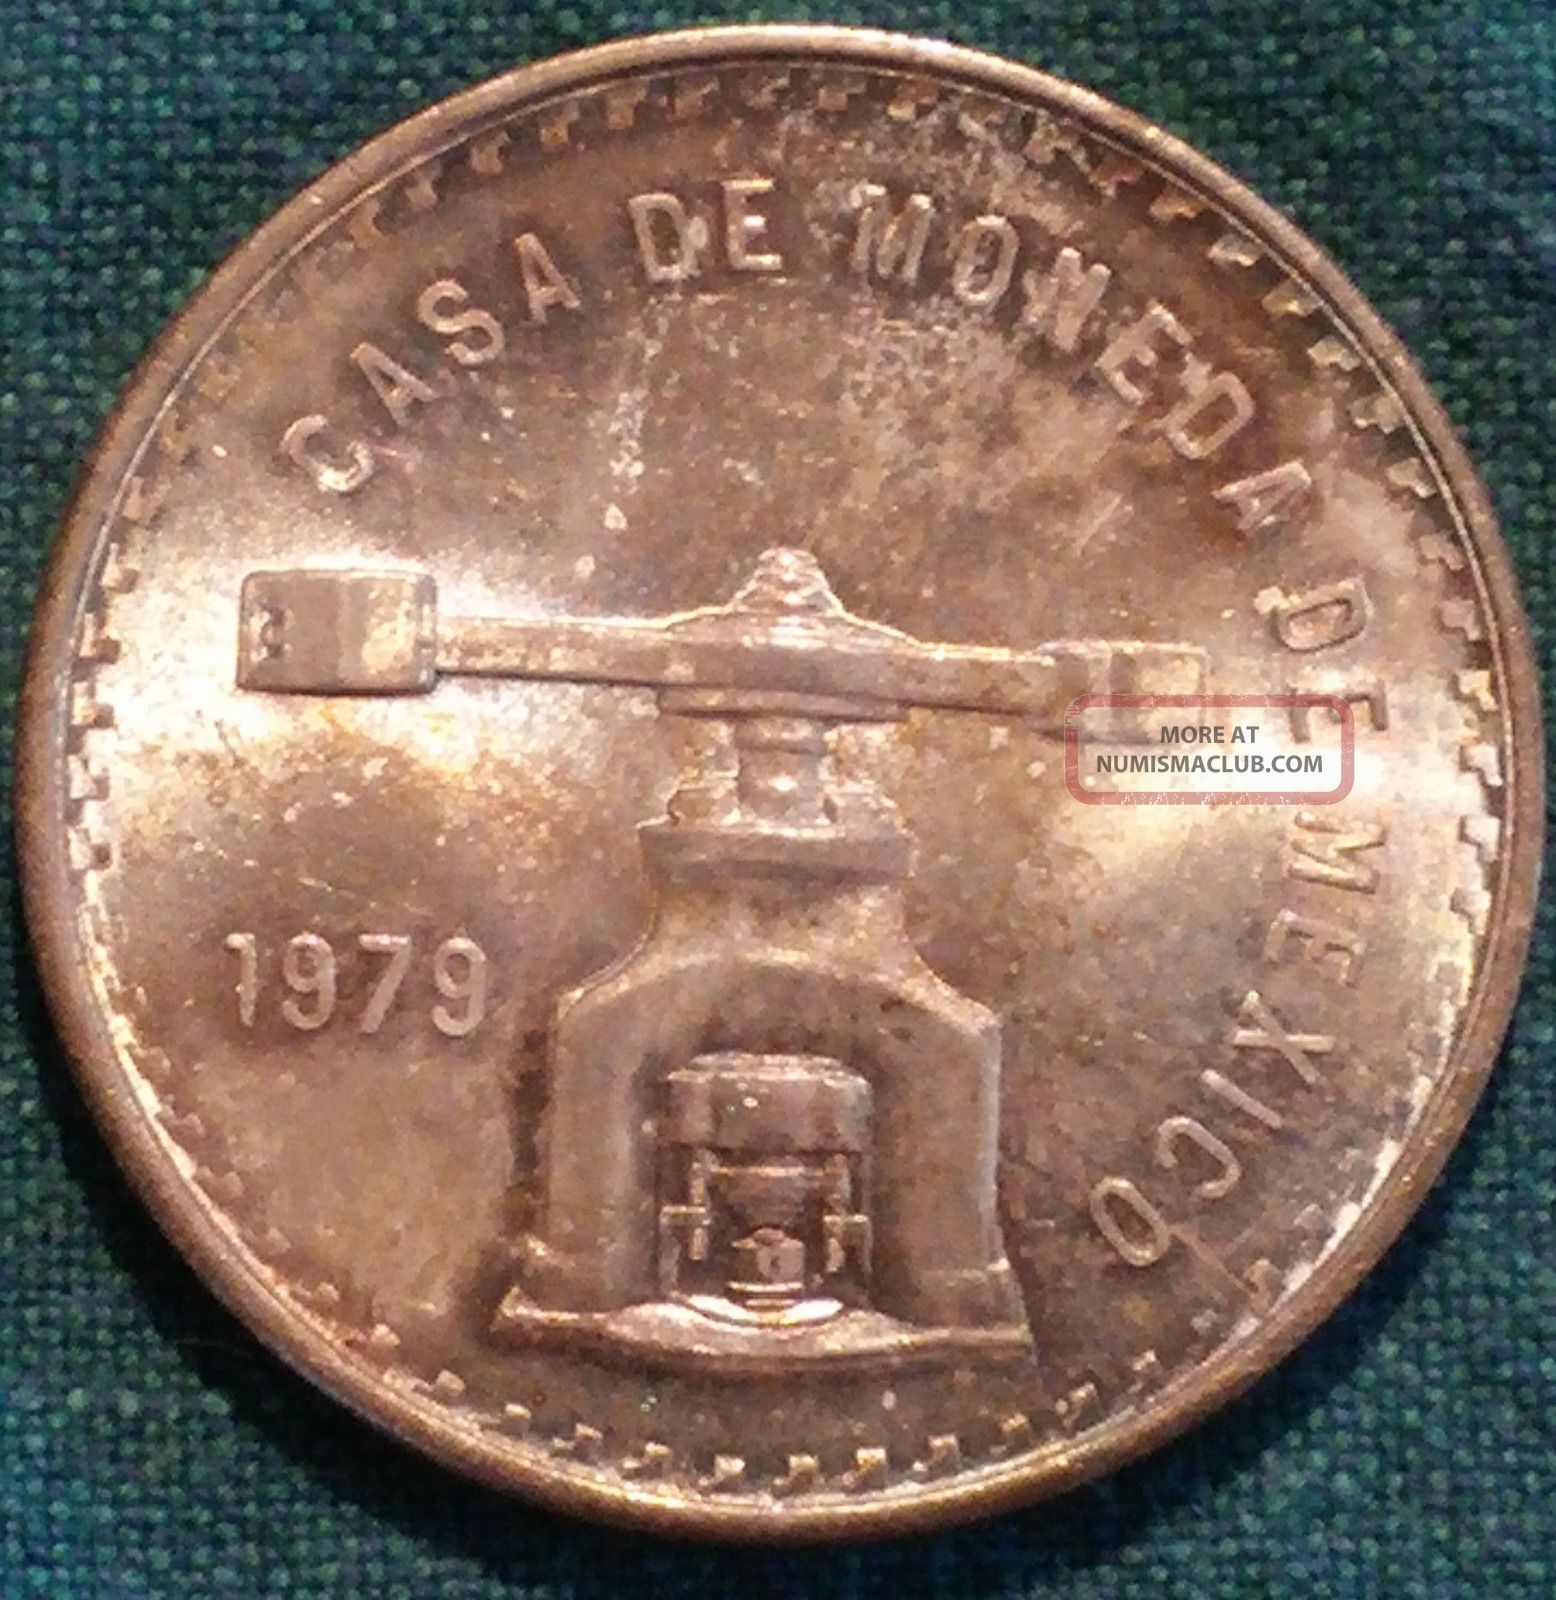 Silver Coin Mexico 1979 Una Onza Troy De Plata Pura Casa De Moneda 1